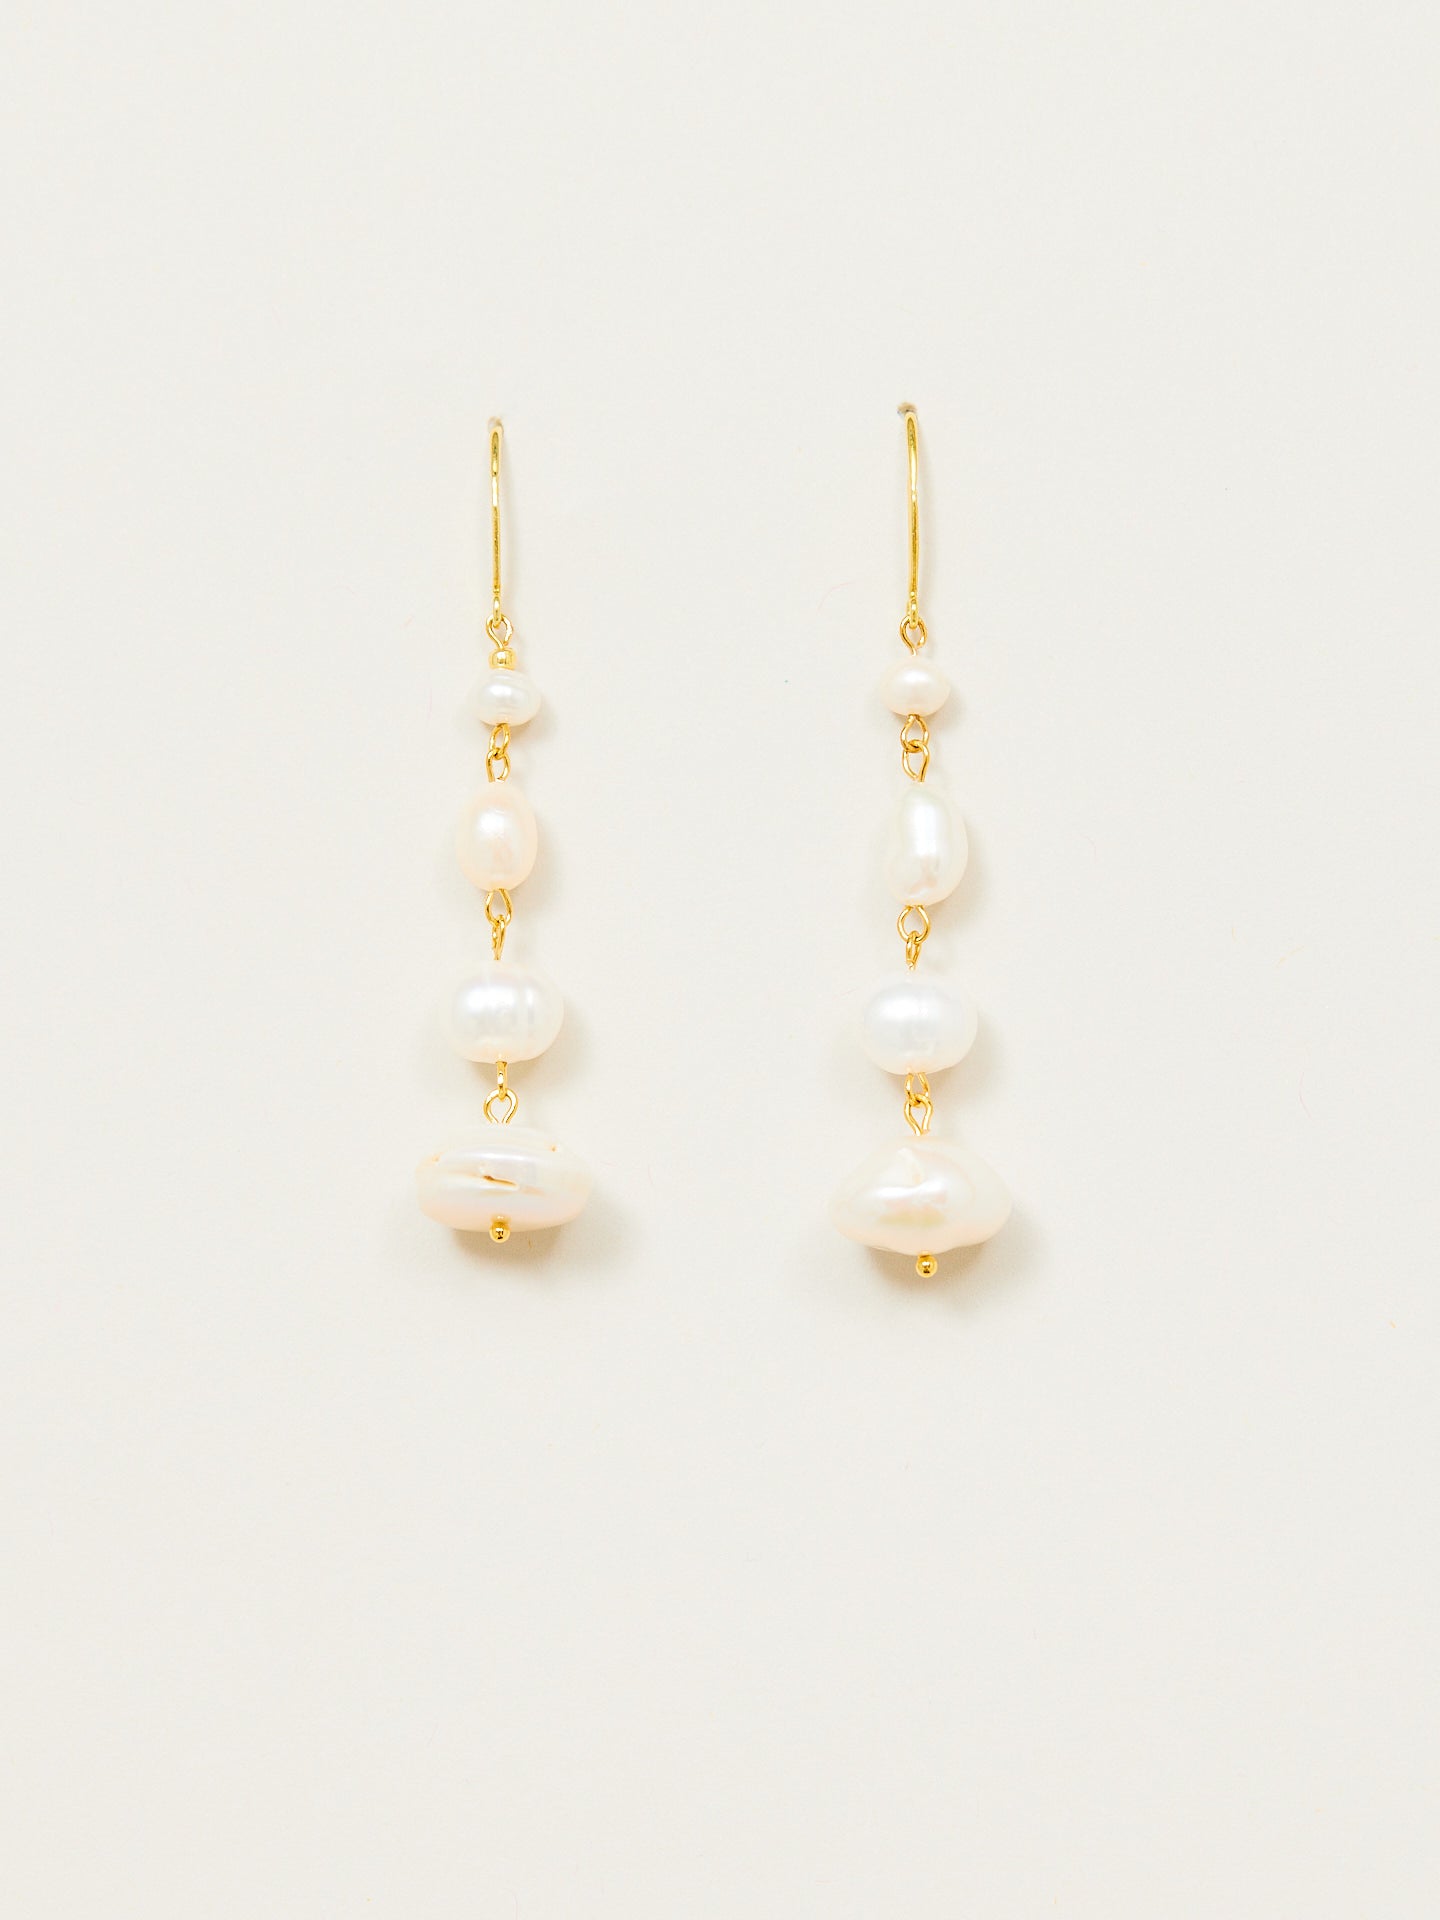 Aufregendes Ohrringpaar bestehend aus weissen Perlen und goldenem Anteil